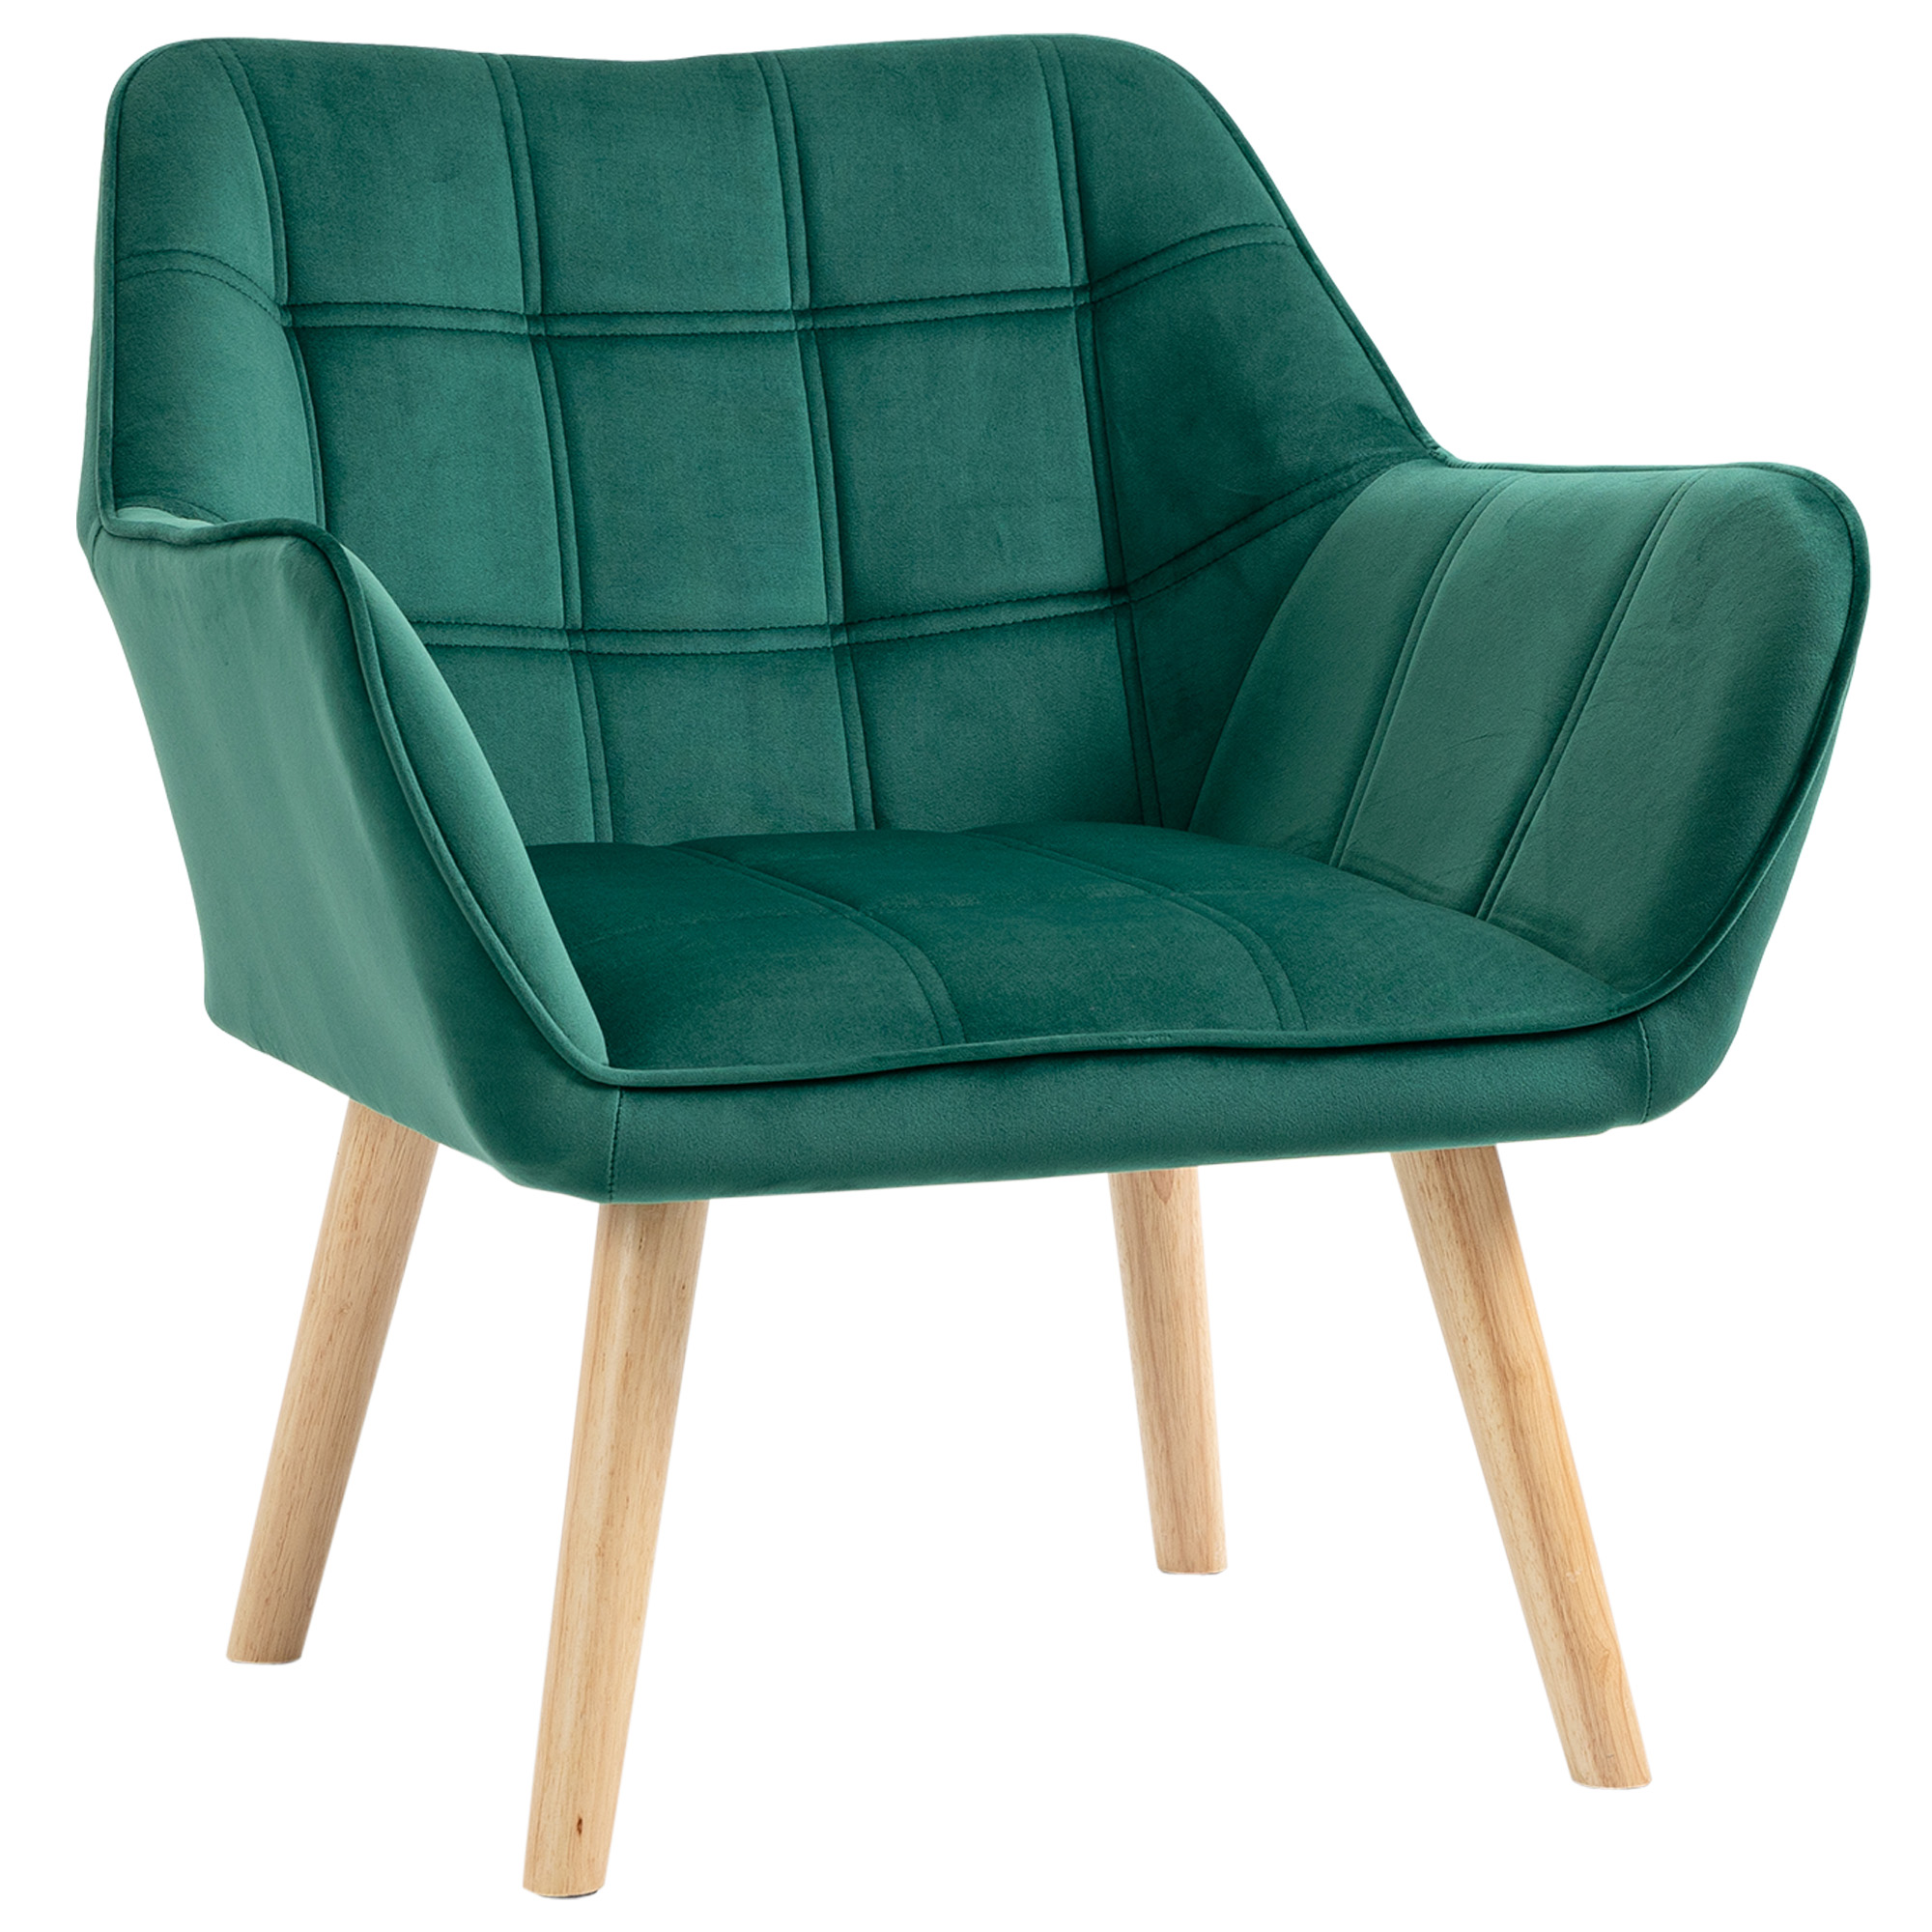 Πολυθρόνα HOMCOM Nordic style σε ξύλο και πράσινο βελούδινο εφέ για σαλόνι ή γραφείο